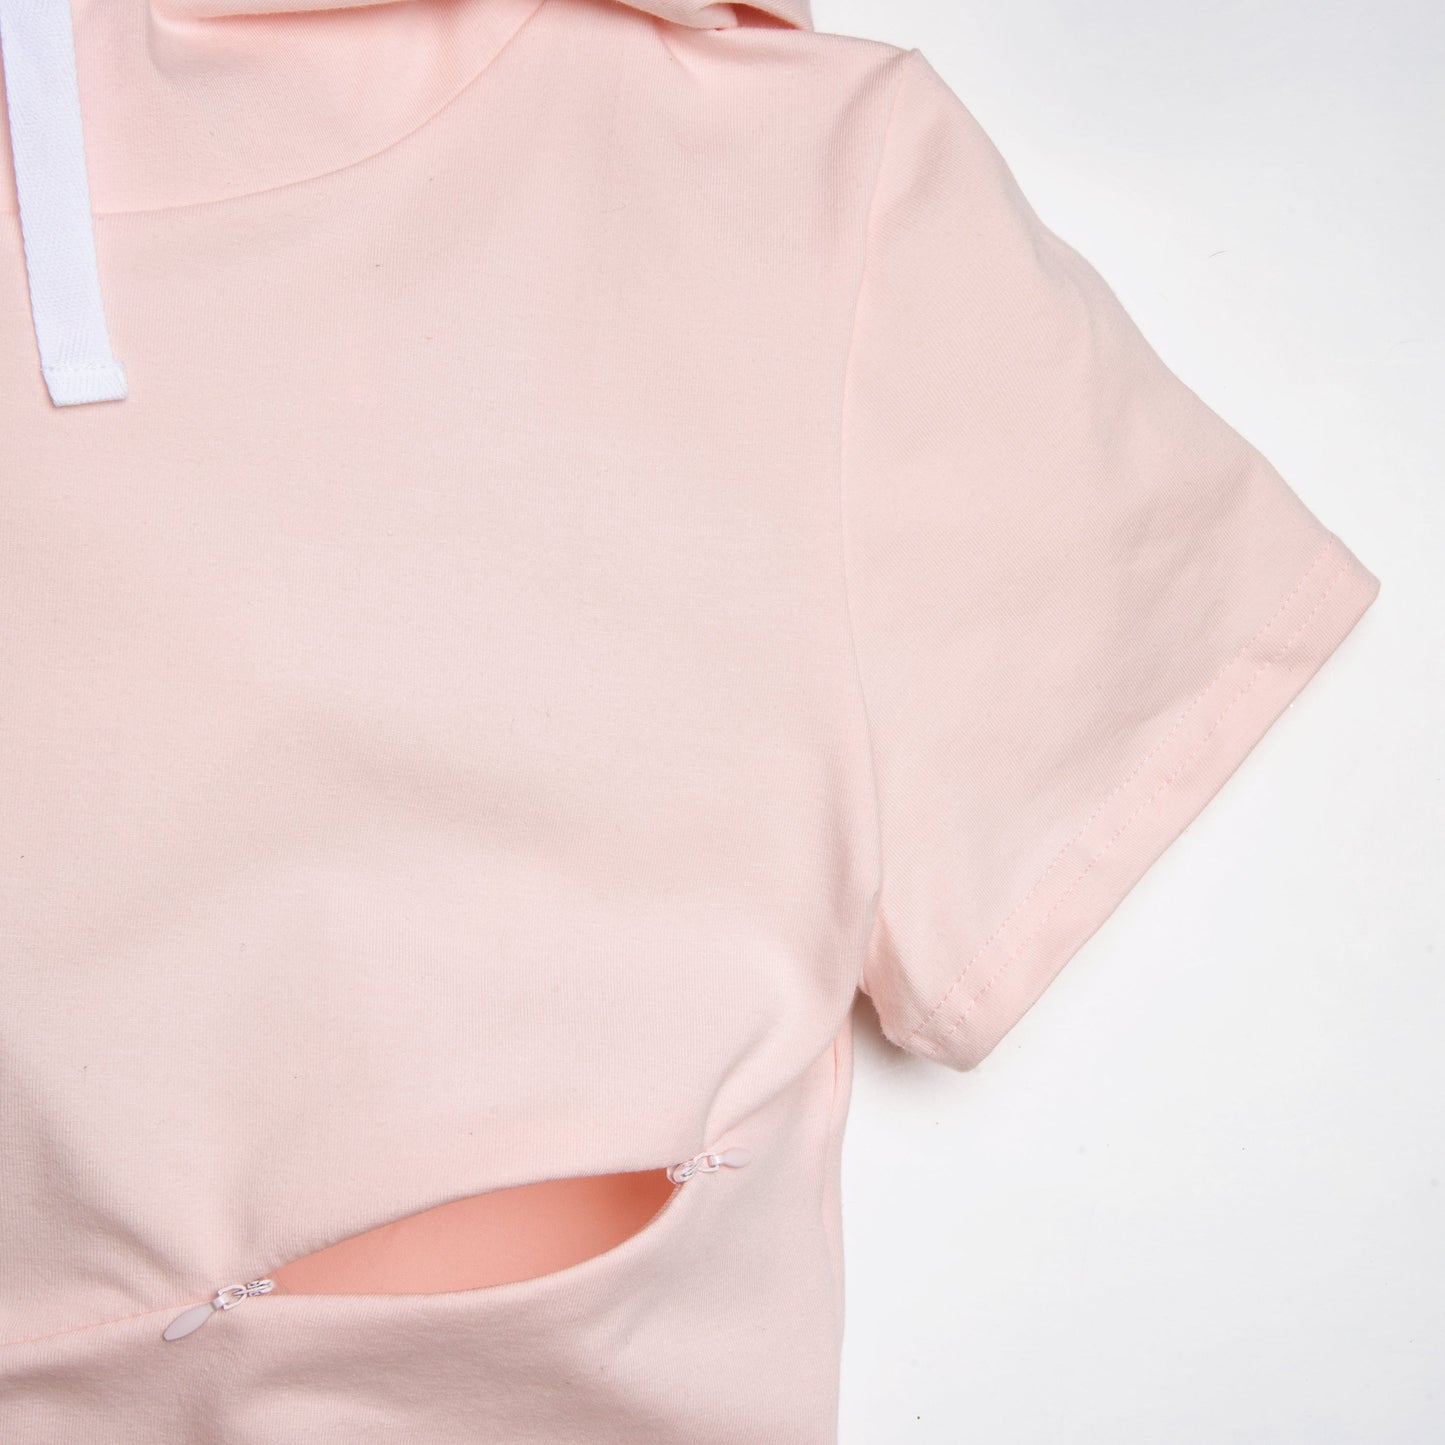 XLARGE - ROSE robe maternité, allaitement, postpartum - Léger défaut ( réf #450 )